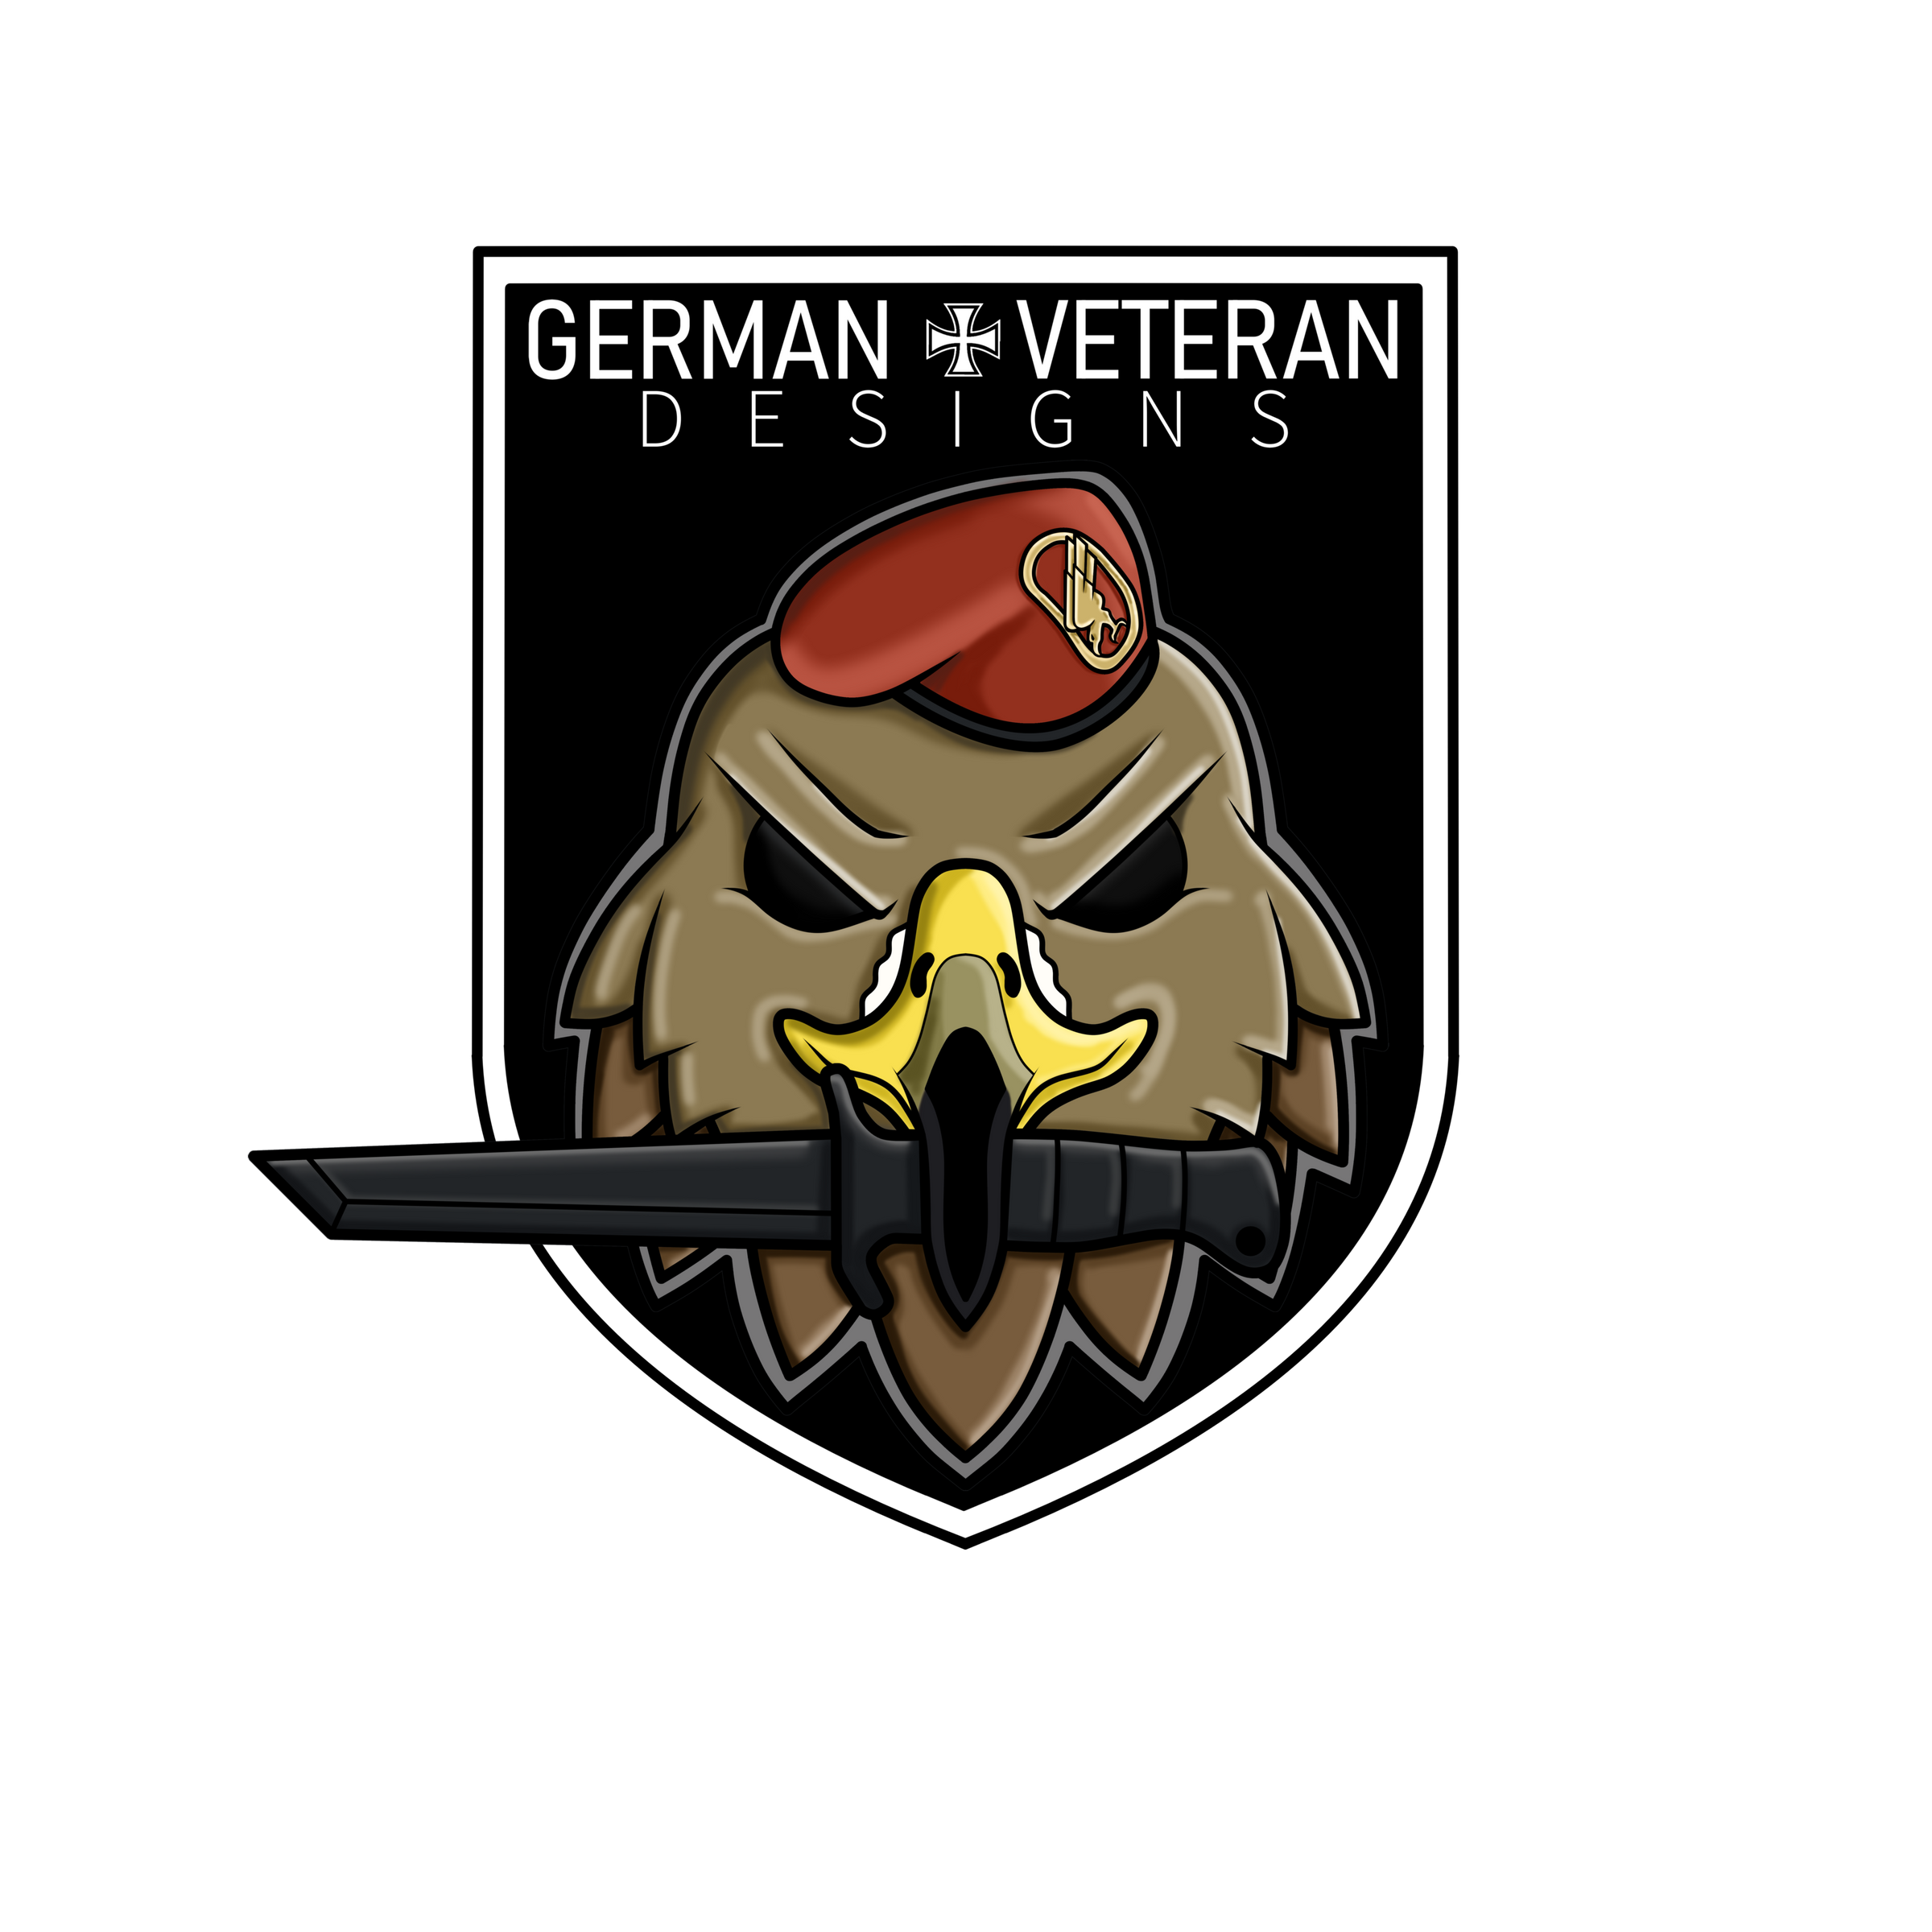 German Veteran Design